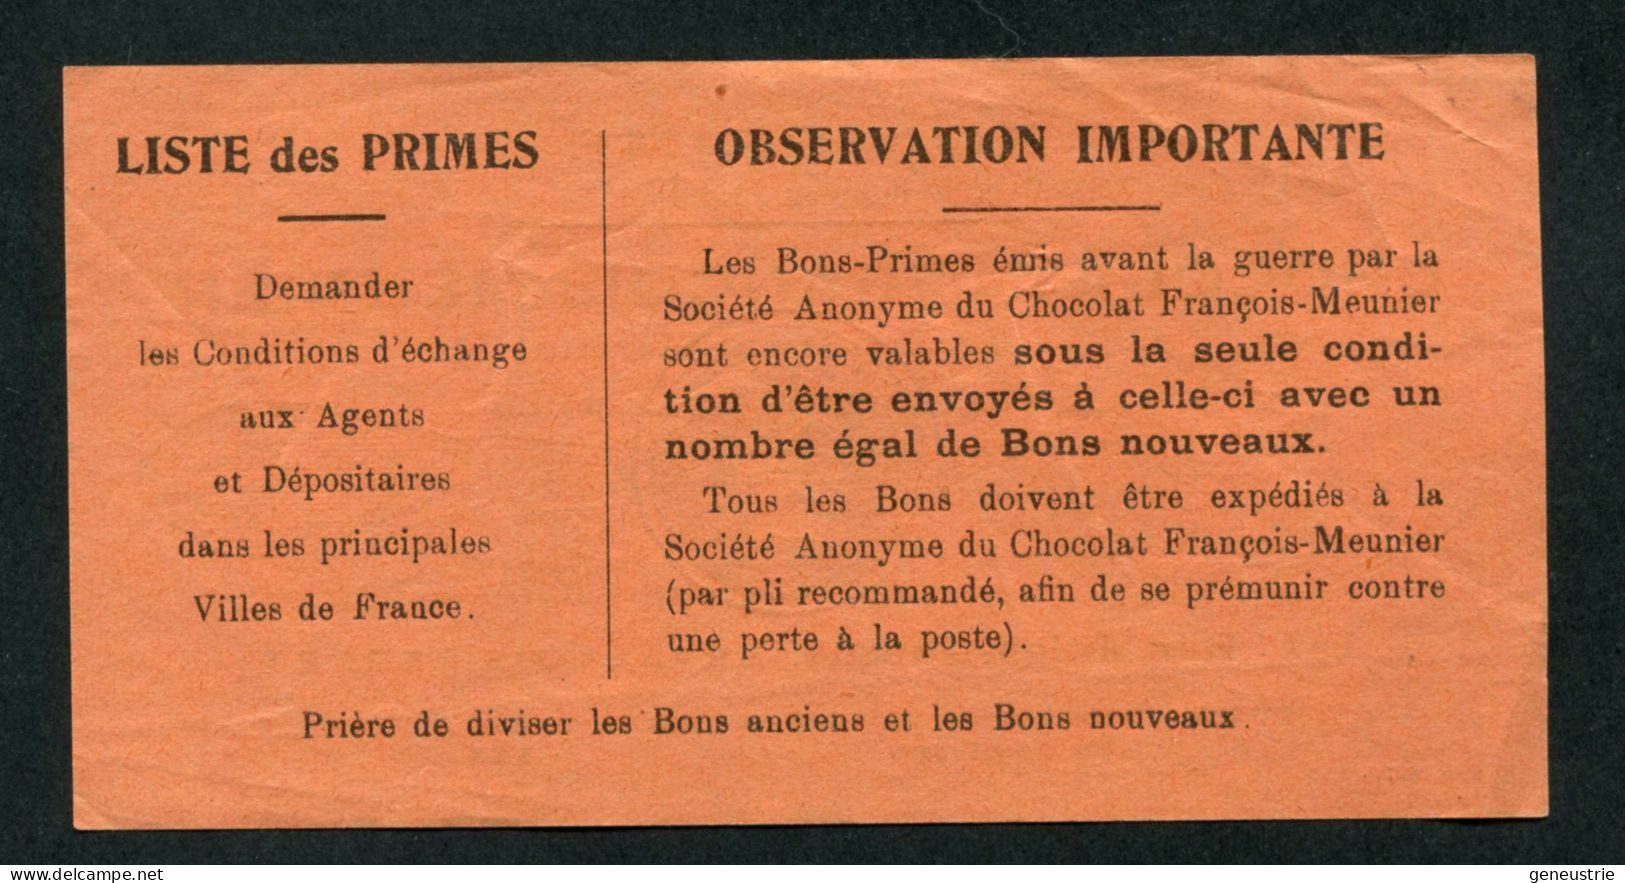 WWII - Bon-Prime 1942 "Chocolat François-Meunier - 130, Rue D'Aubervilliers à Paris" Monnaie De Nécessité WW2 - Monetary / Of Necessity